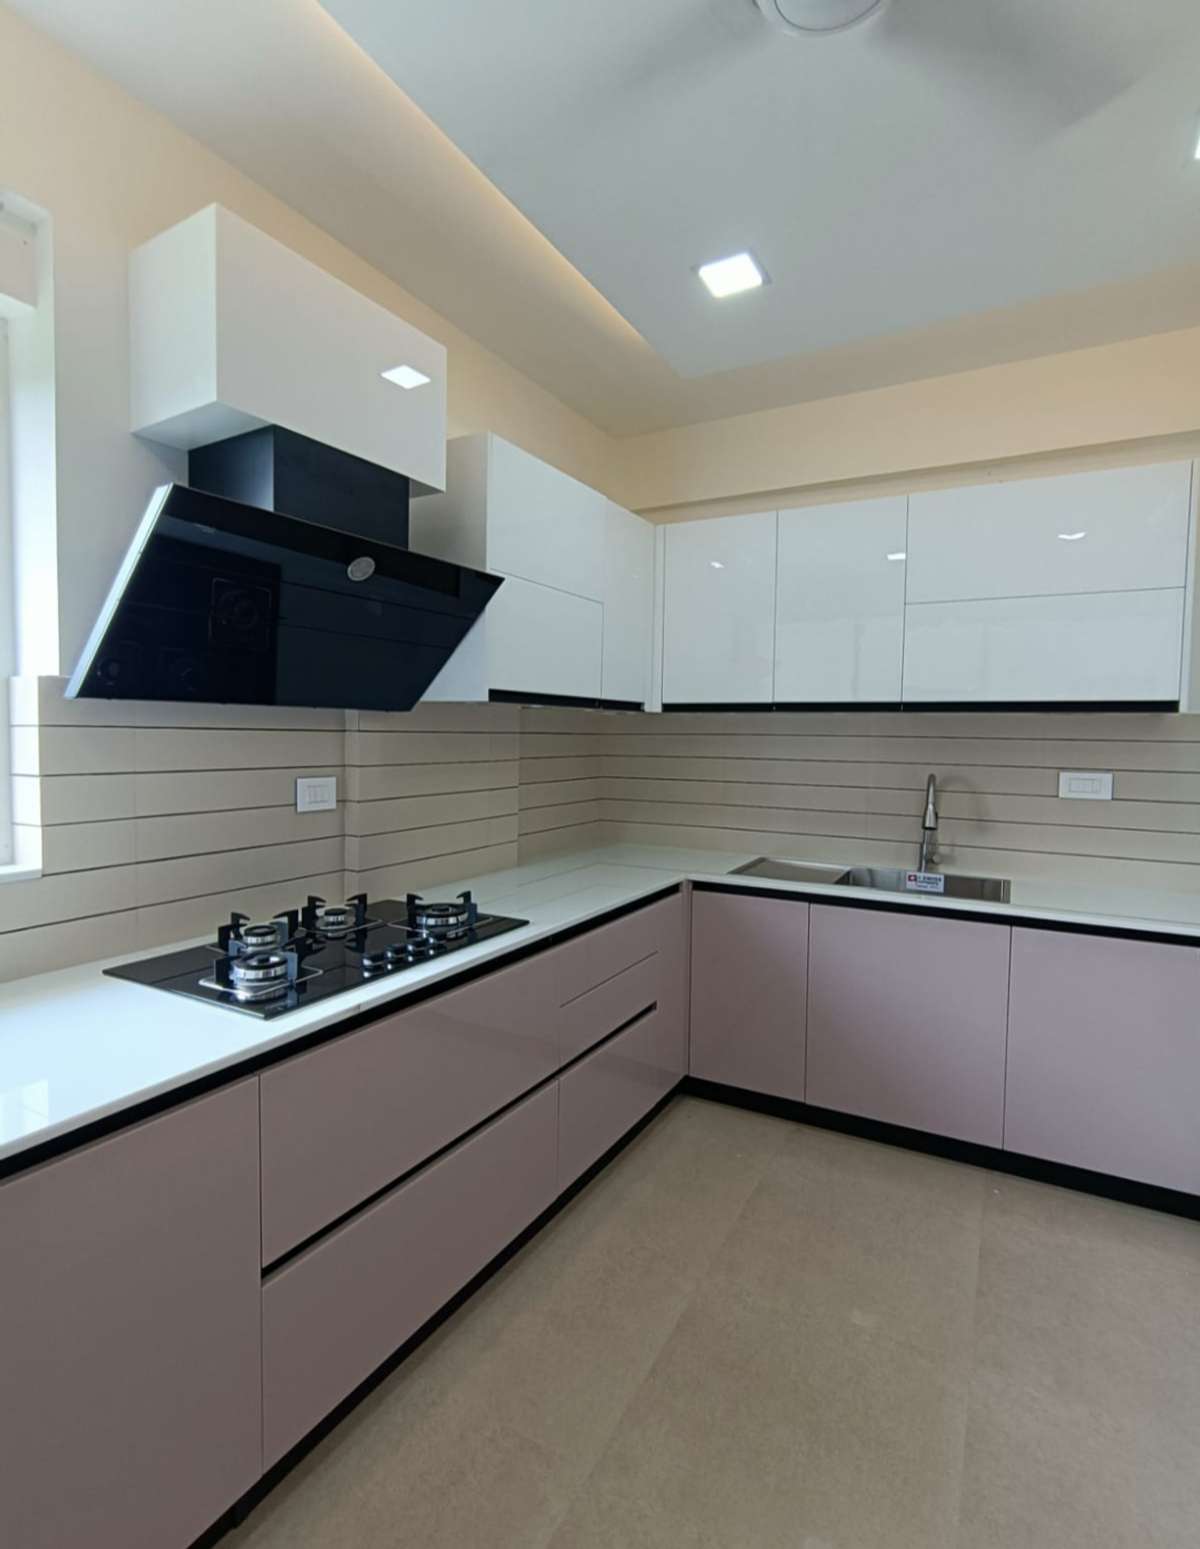 Kitchen, Storage Designs by Interior Designer CABINET stories 9495011585, Thrissur | Kolo